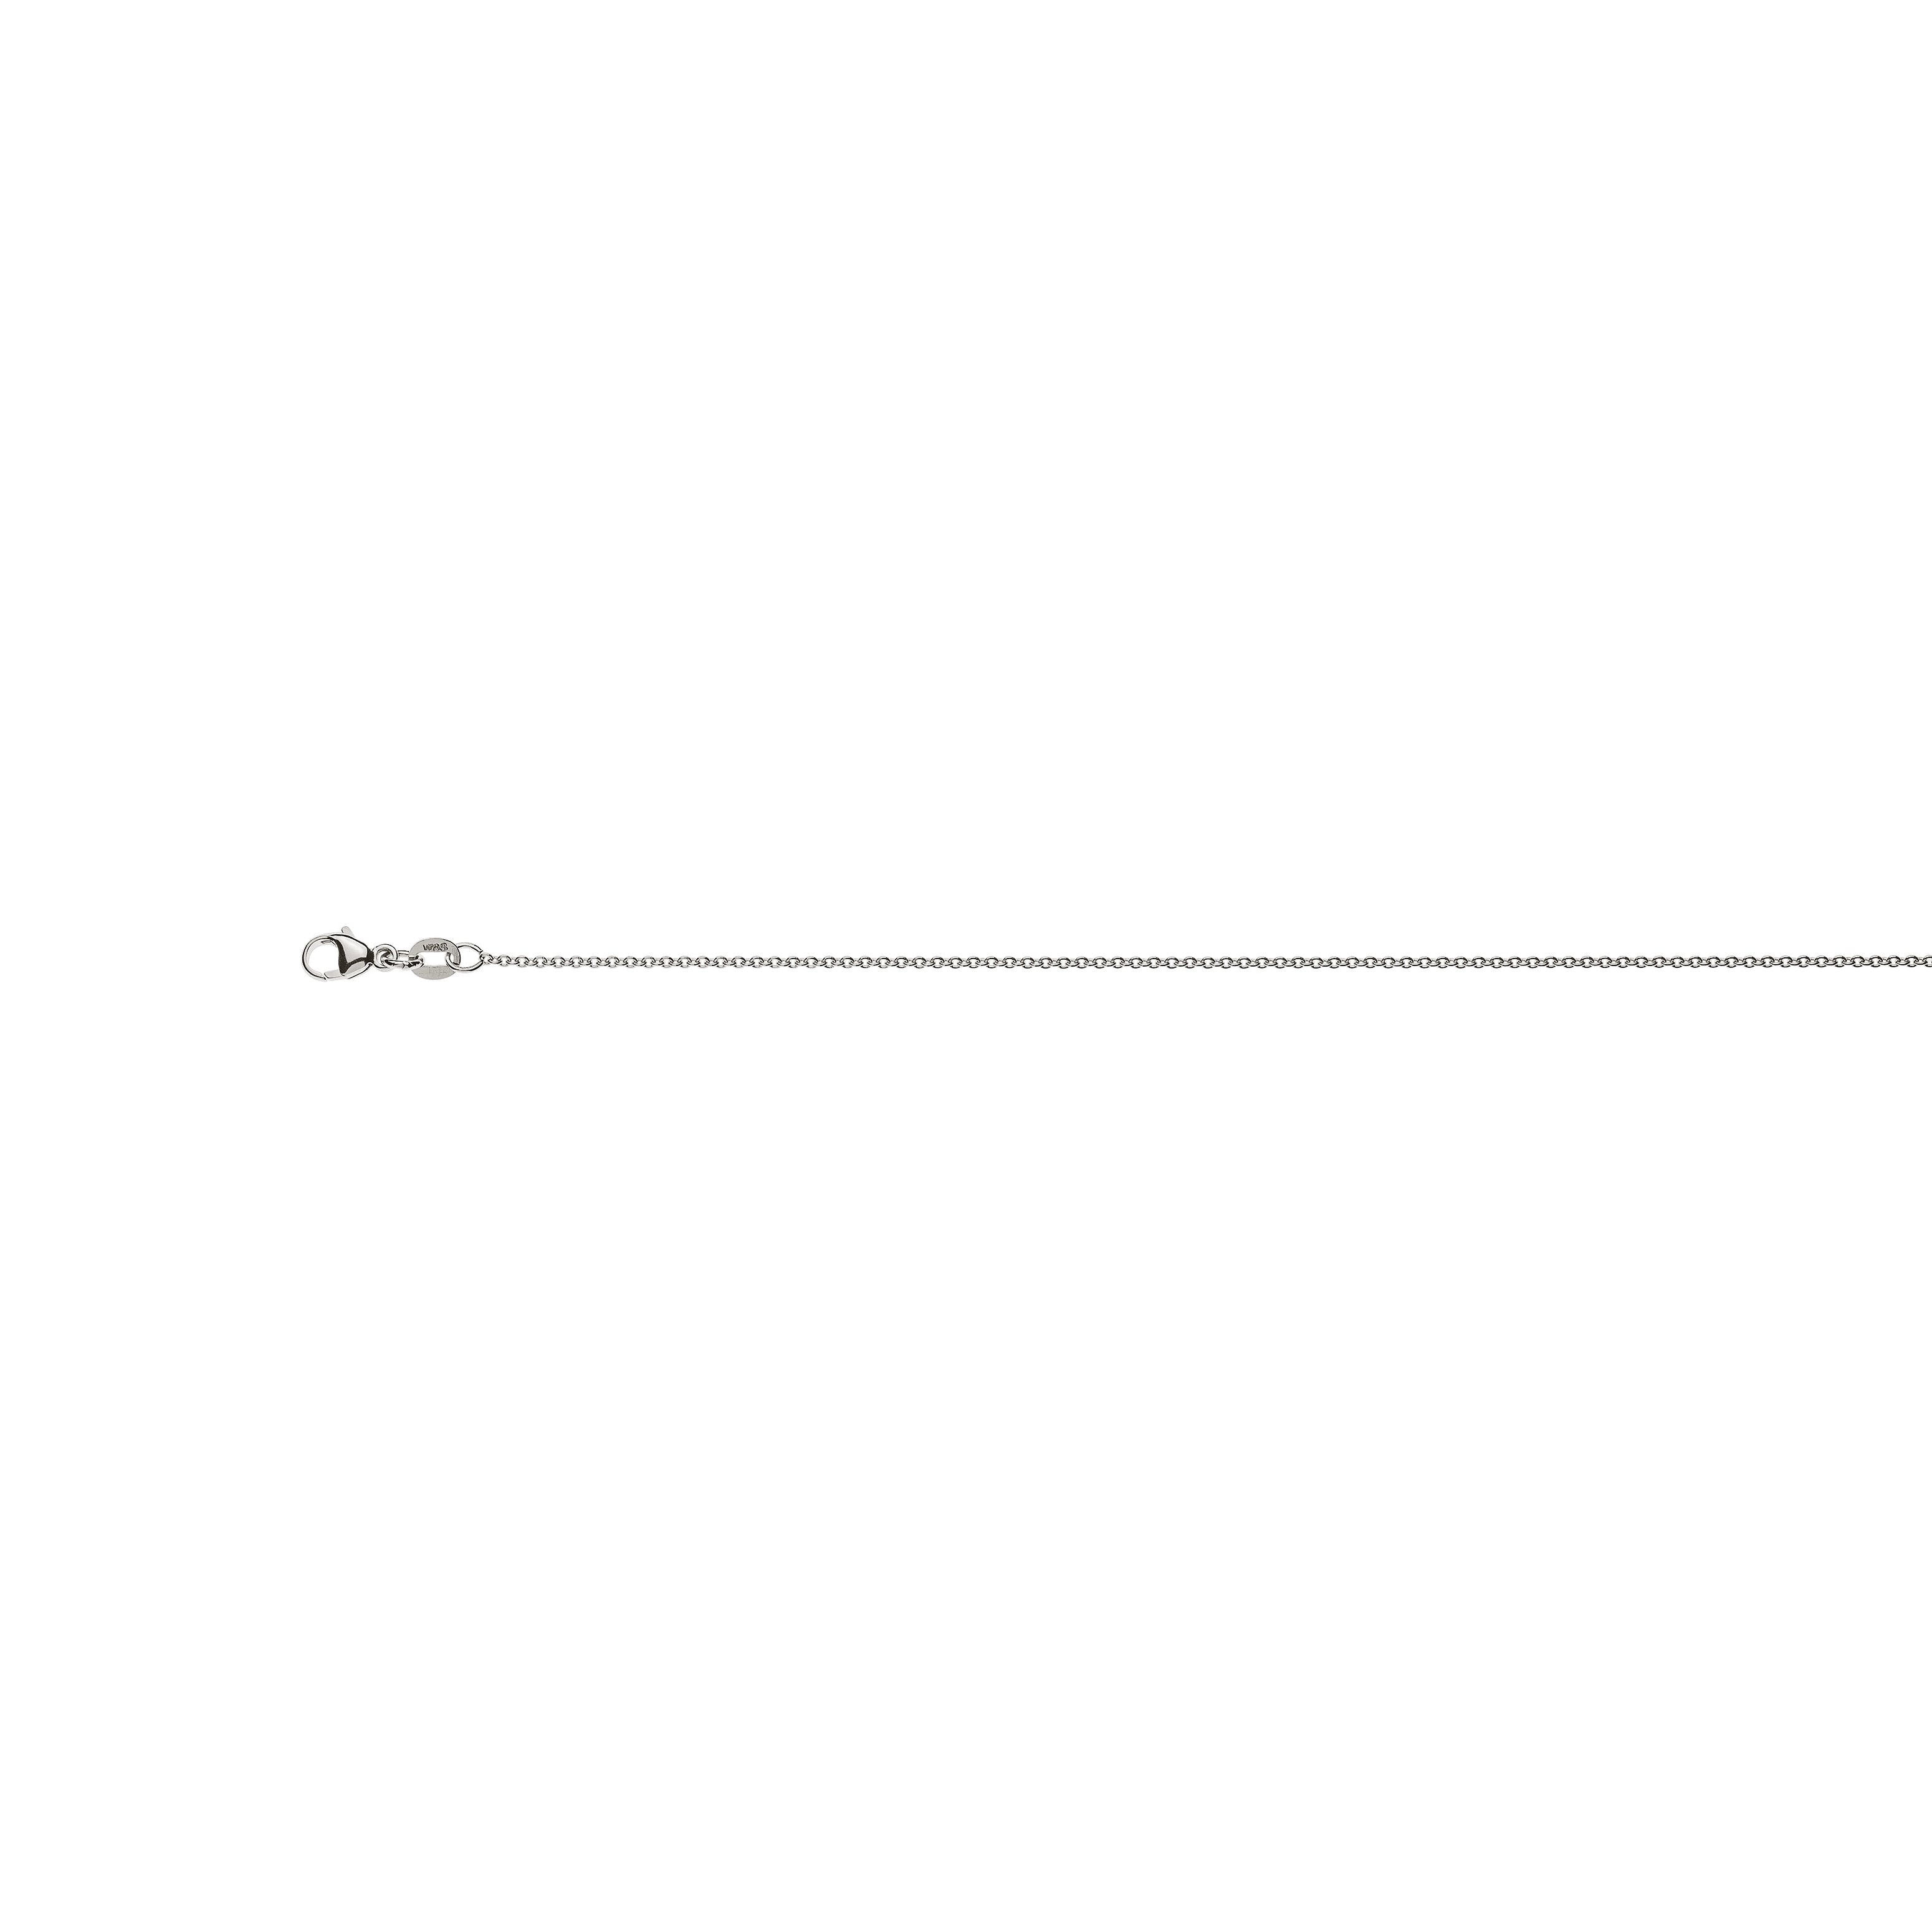 Rundanker Halskette aus 585er Weissgold: ca. 1,3 mm Breite